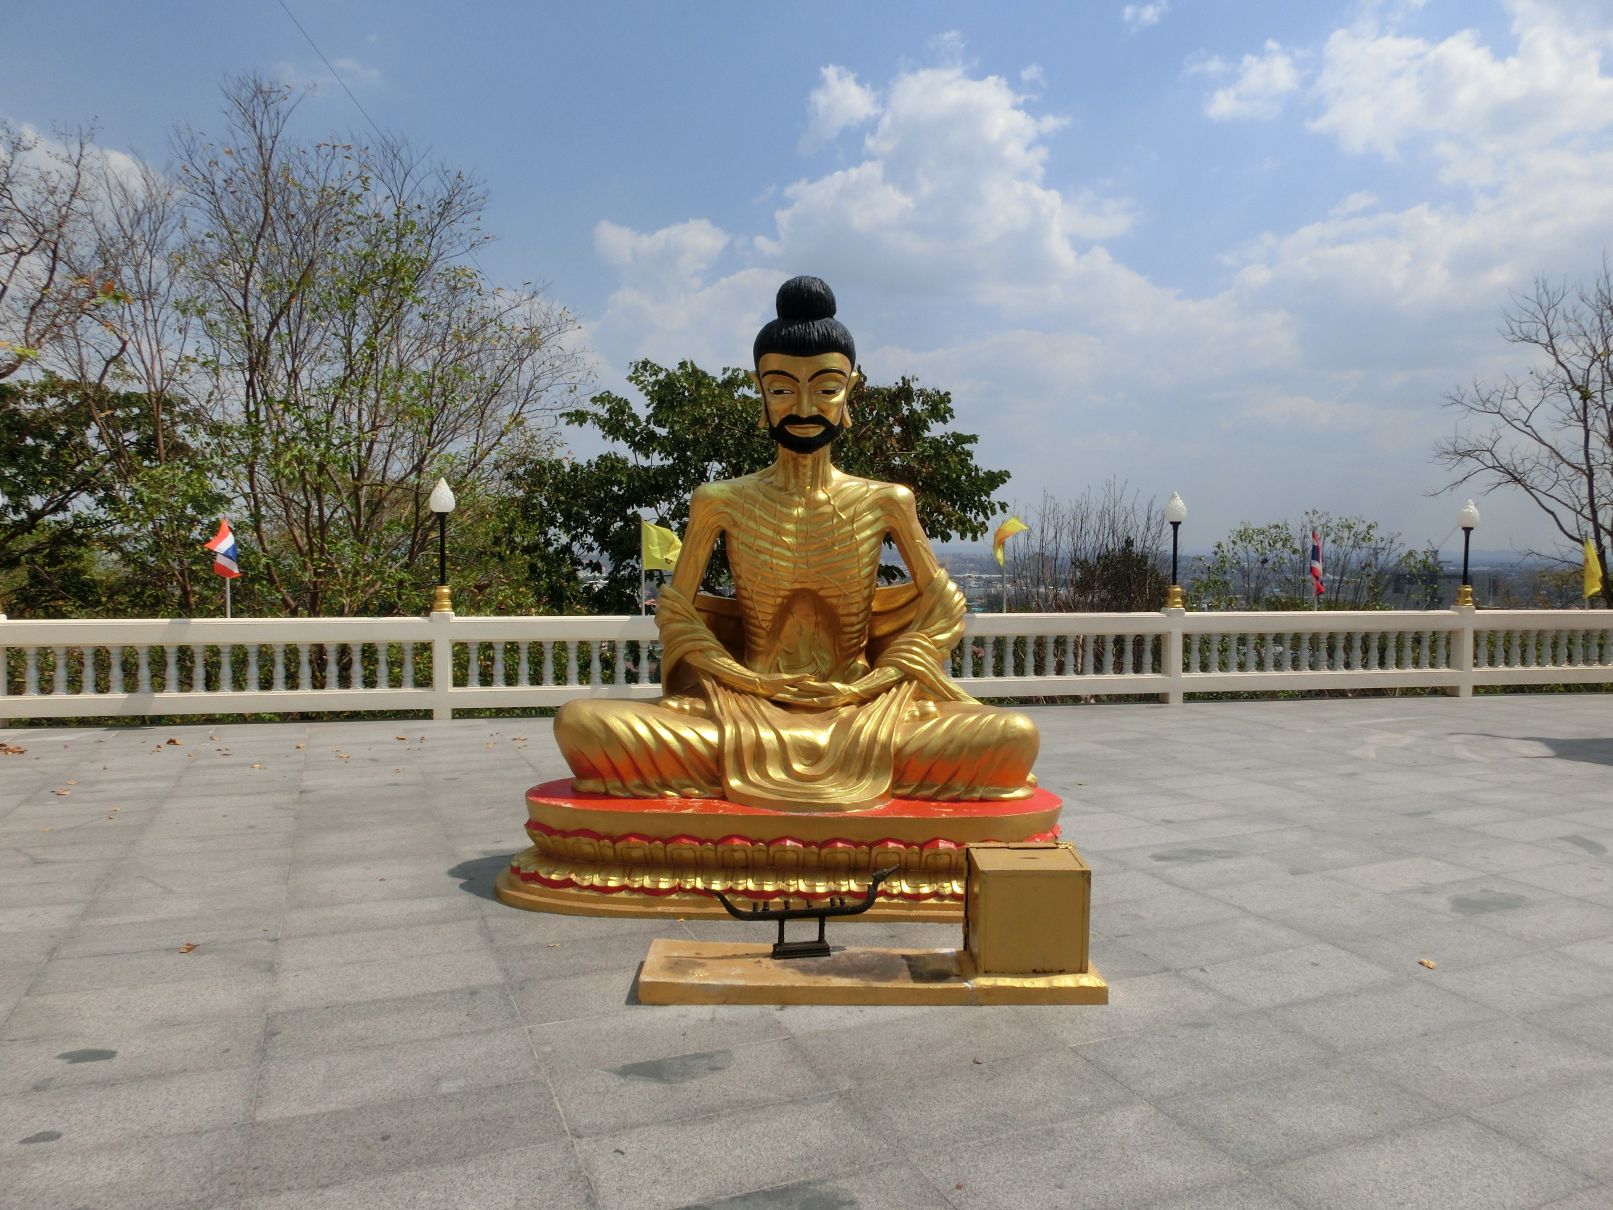 Ez az óriásbuddha melletti nyeszlett szobor